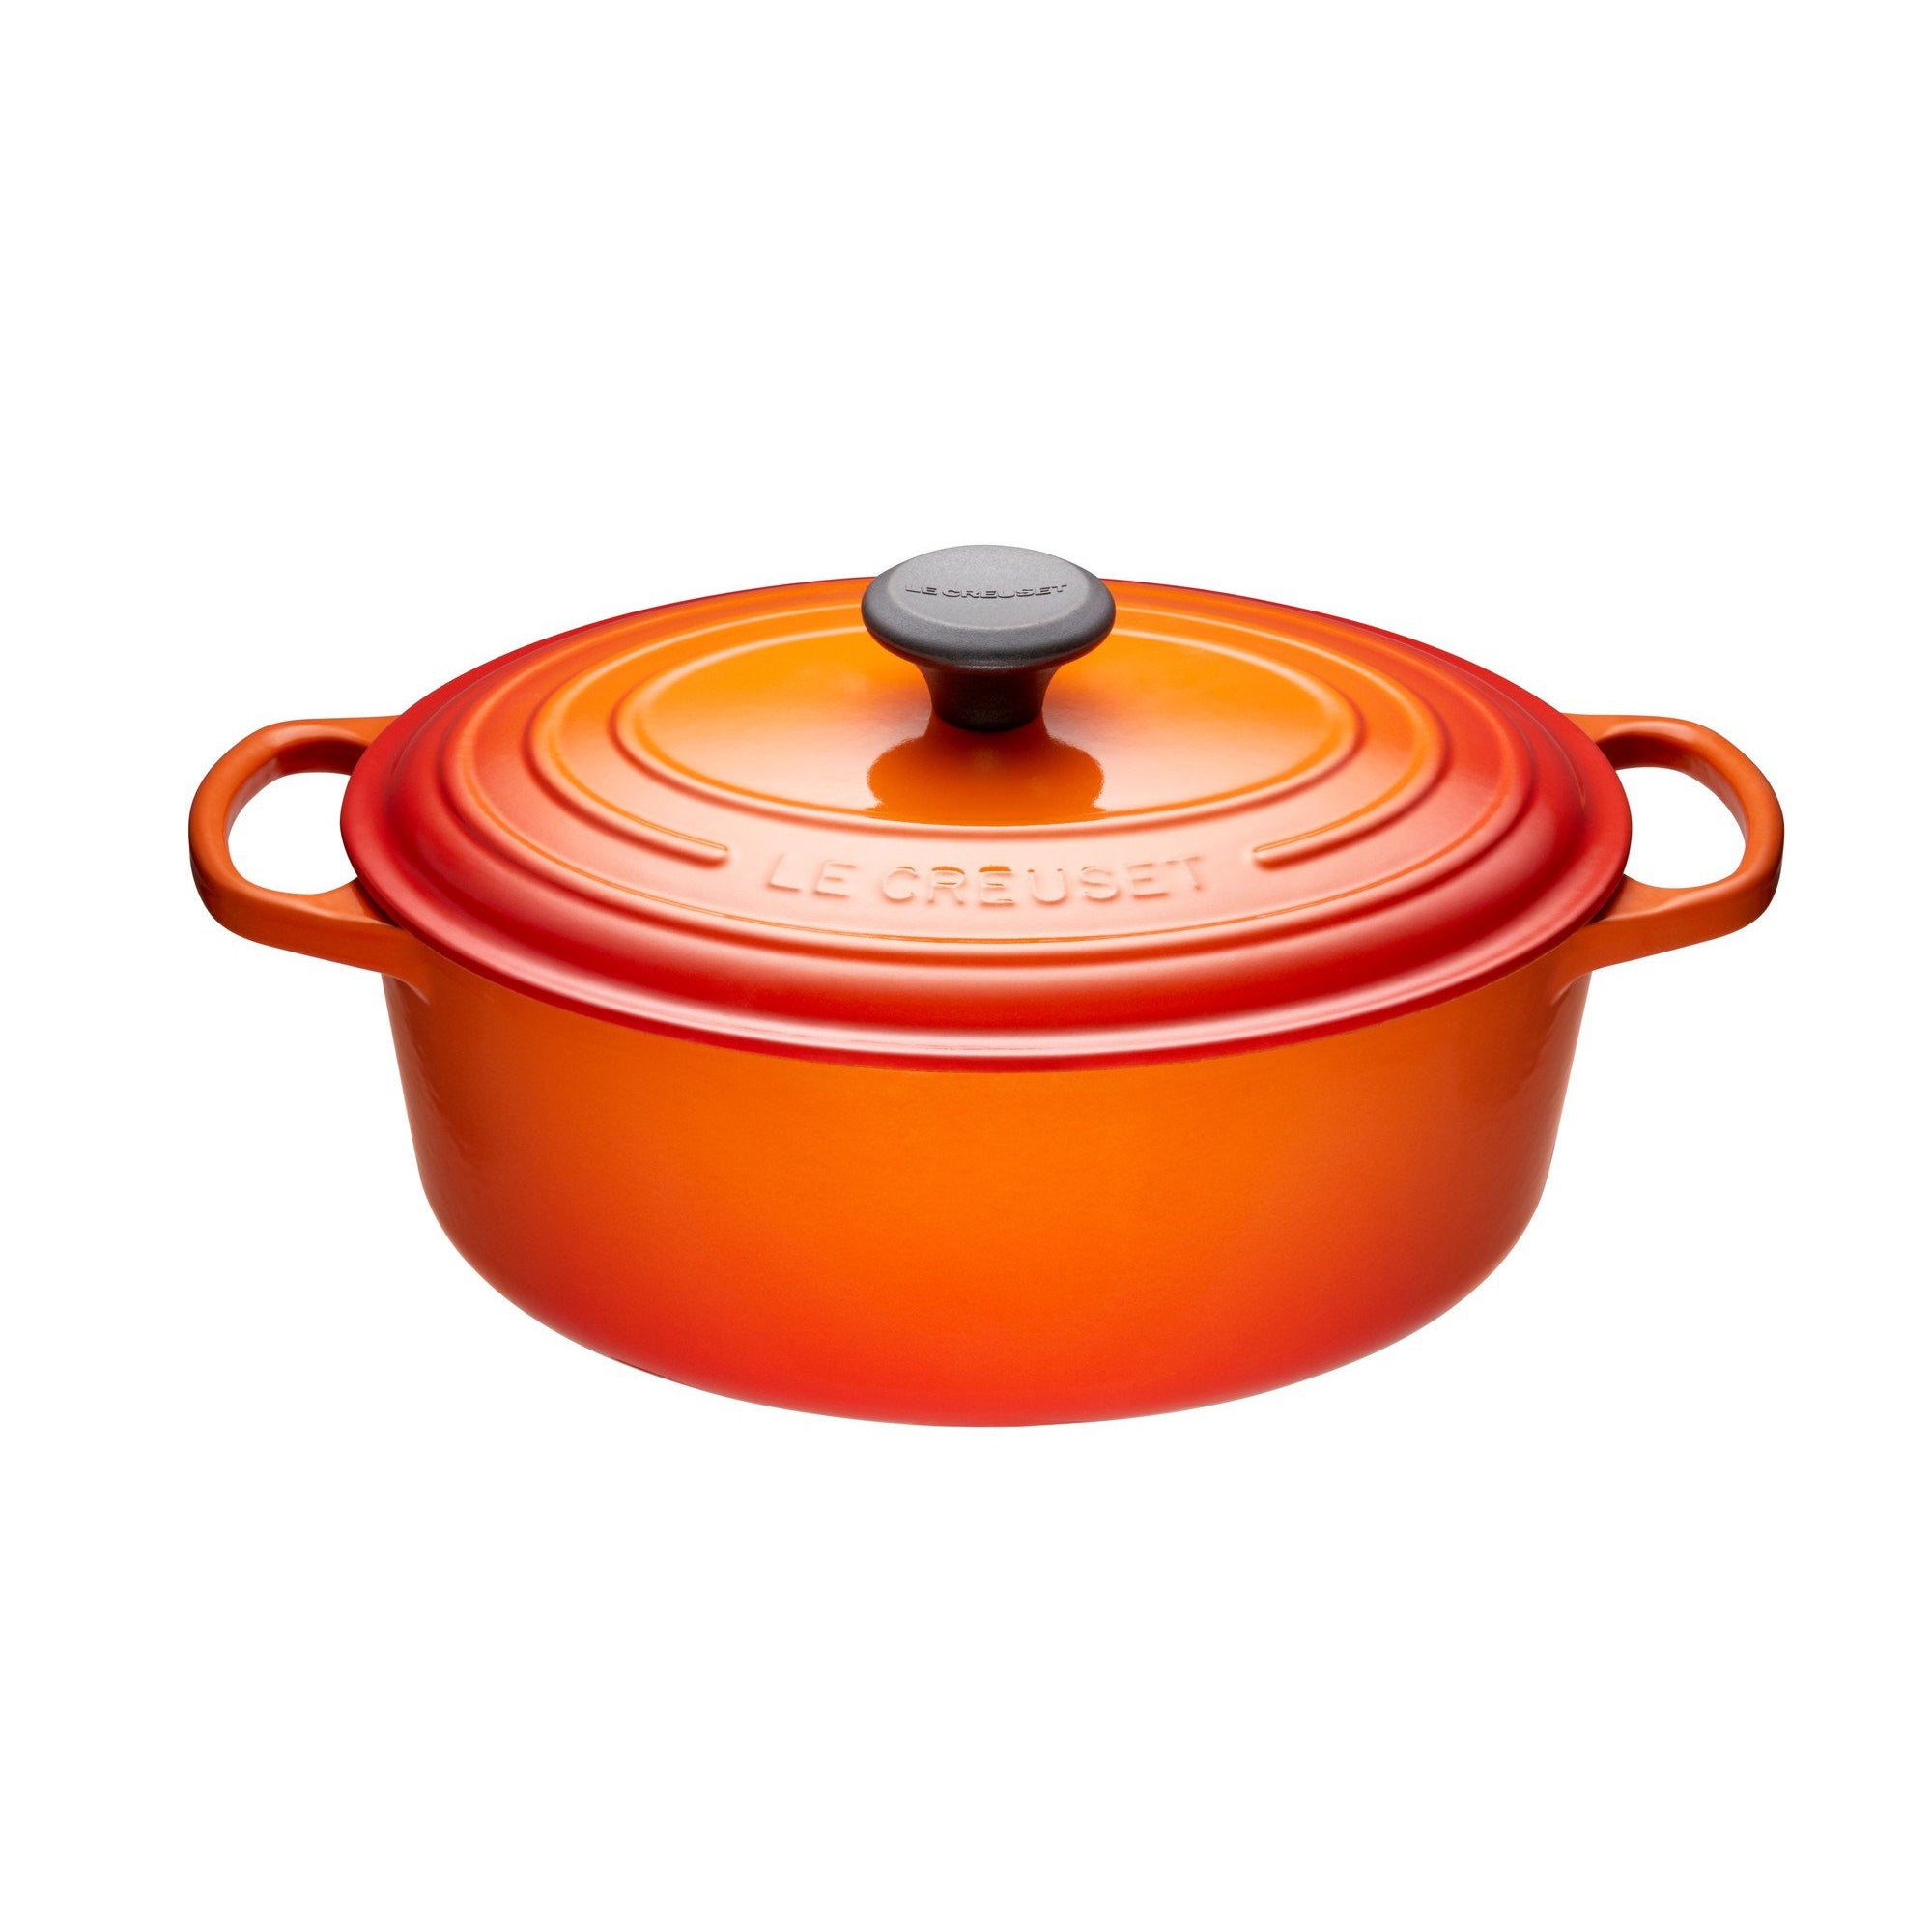 Le Creuset Signature 7.25-Qt. Round Flame Orange Enameled Cast Iron Dutch  Oven with Lid + Reviews